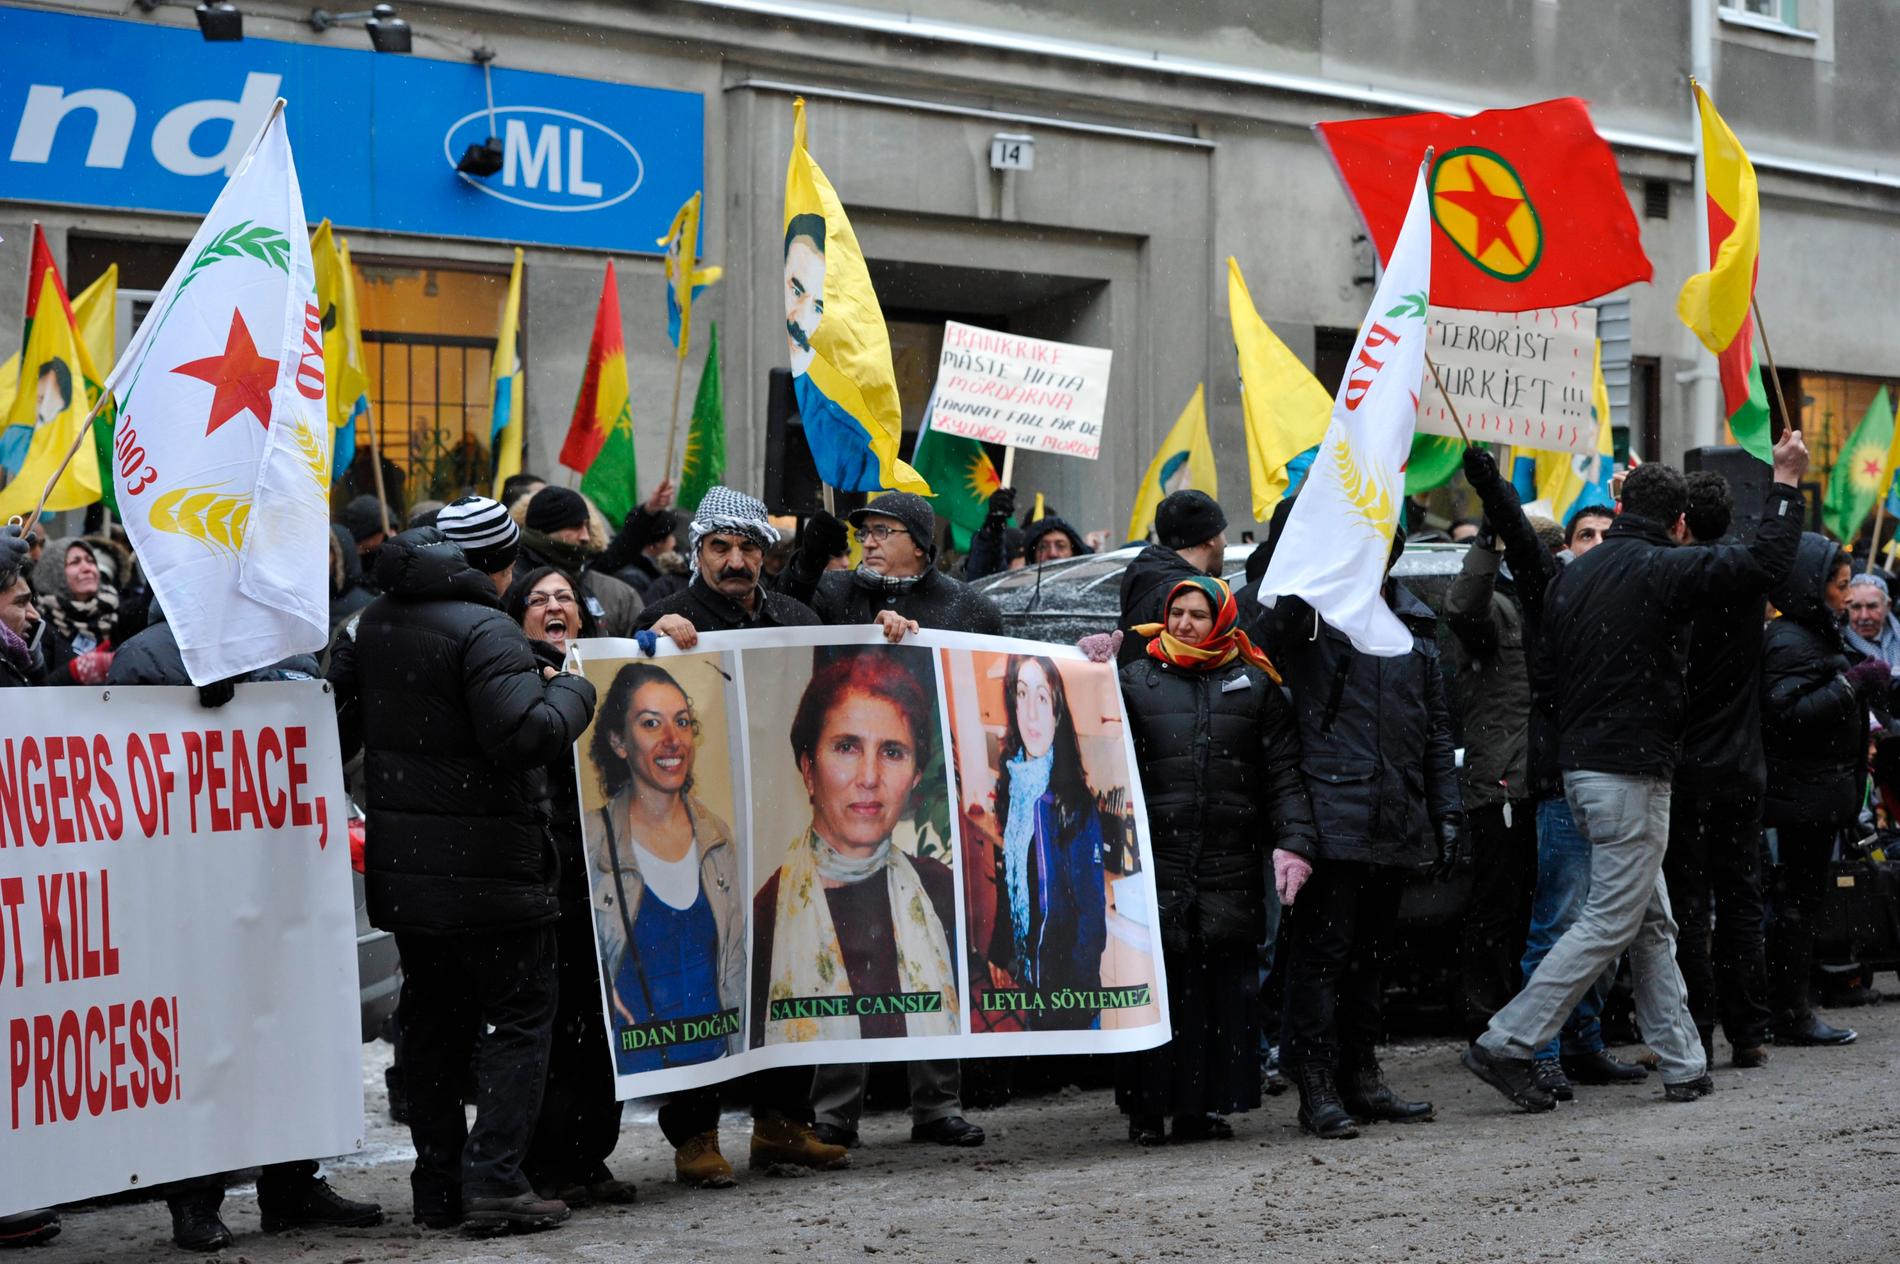 En prokurdisk demonstration i Stockholm 2013.